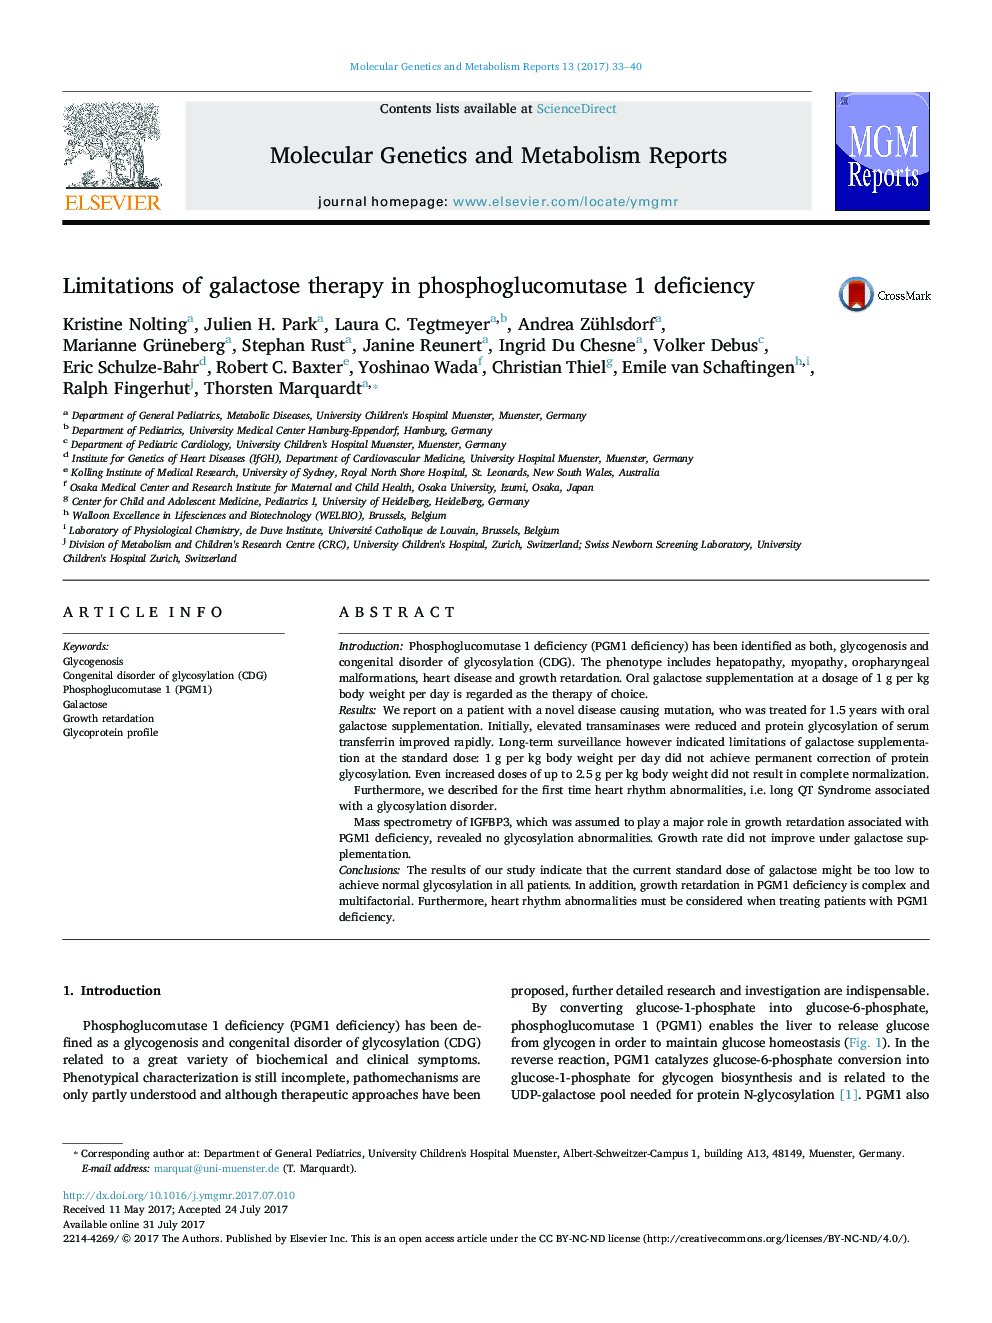 محدودیت های درمان گالاکتوز در کمبود فسفو گلوکوموتاز 1 